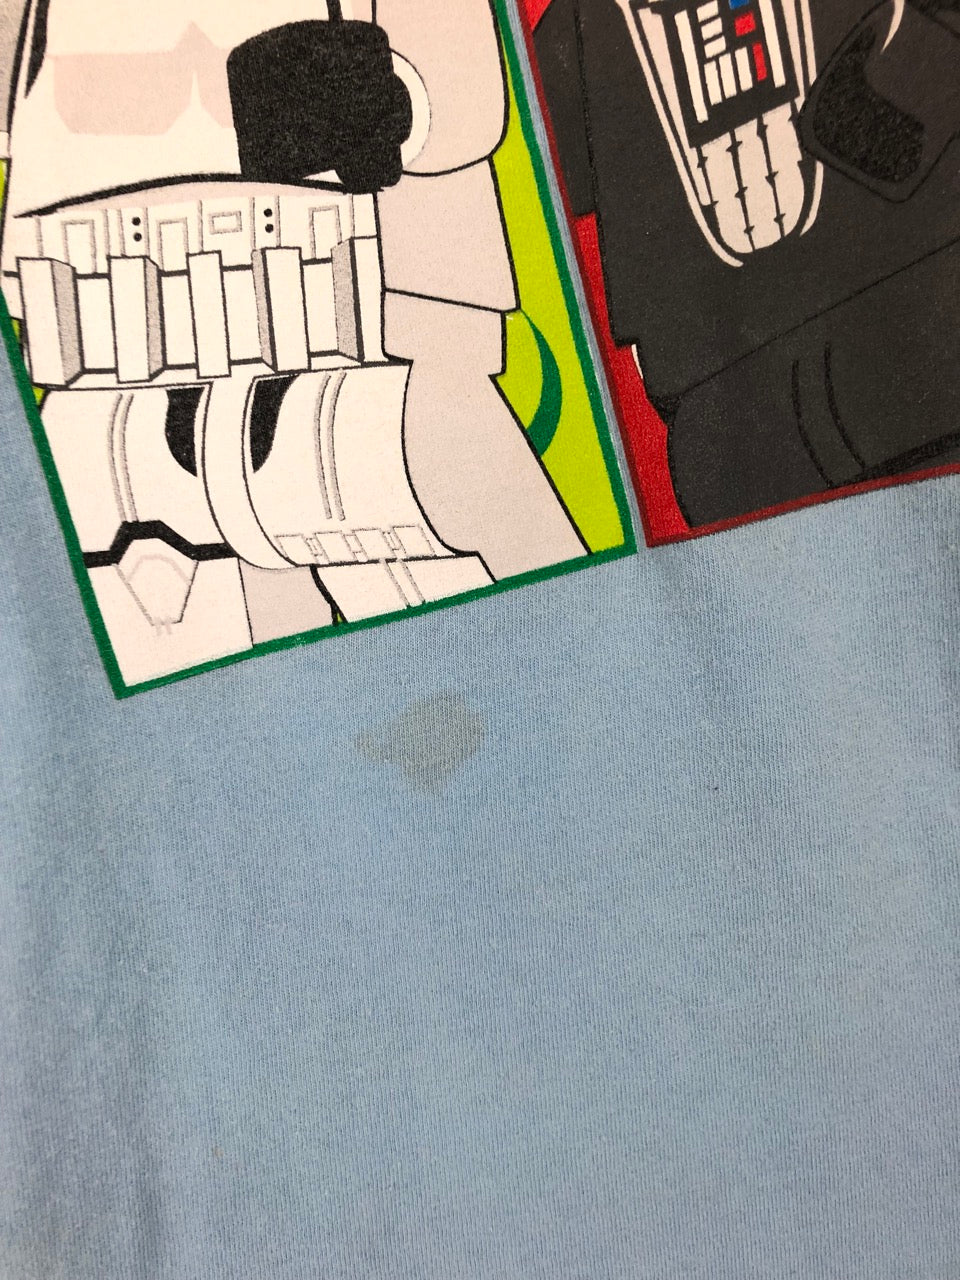 Kids' Star Wars T-Shirt